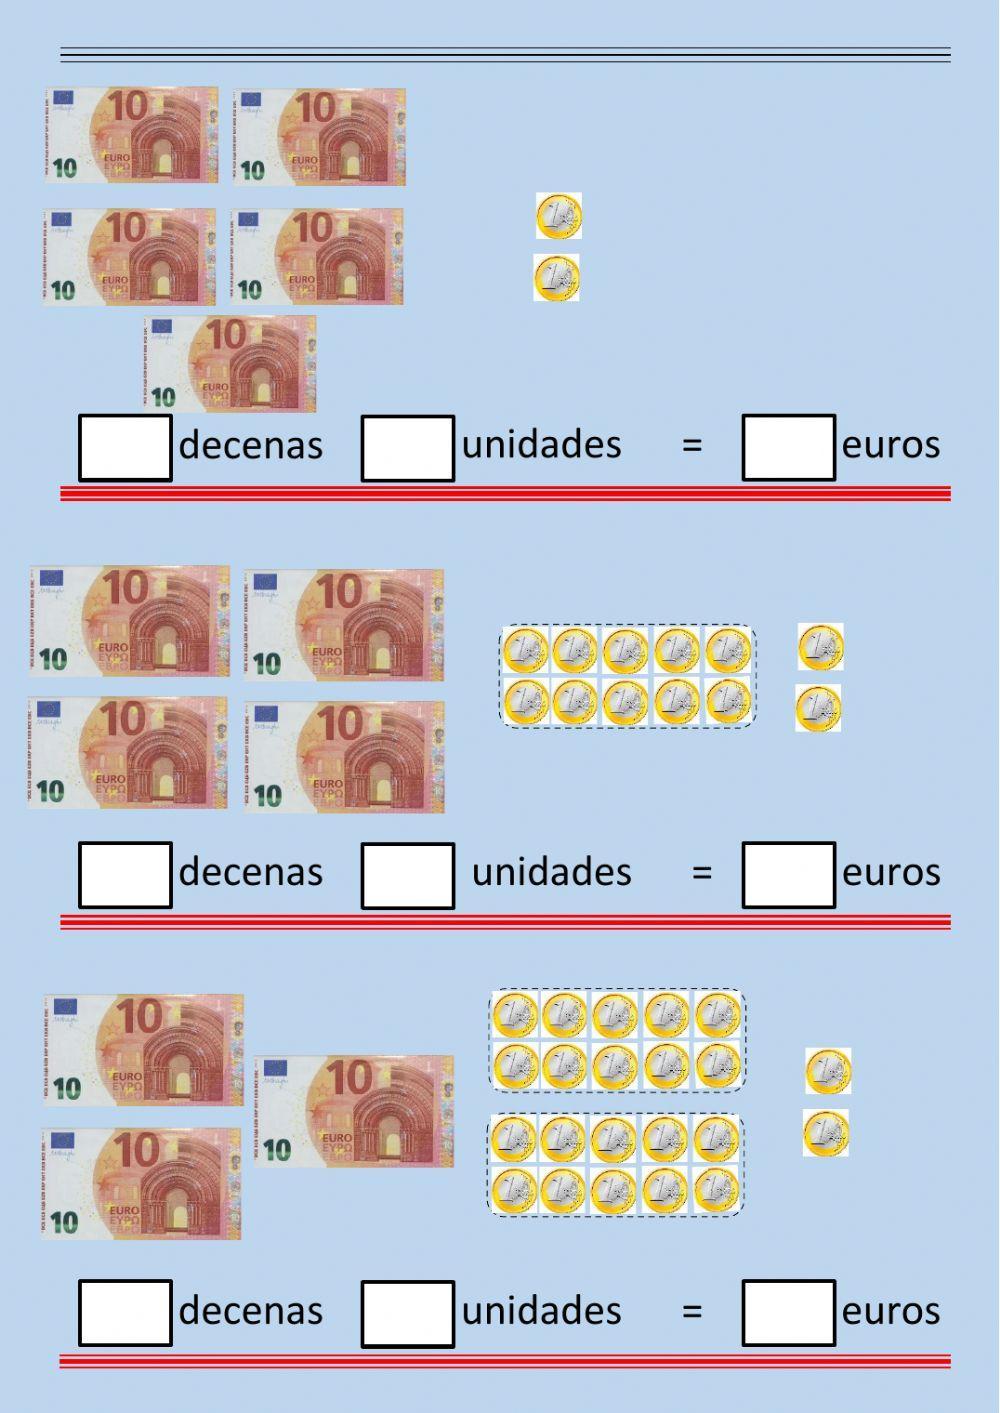 Monedas, decenas y unidades 1